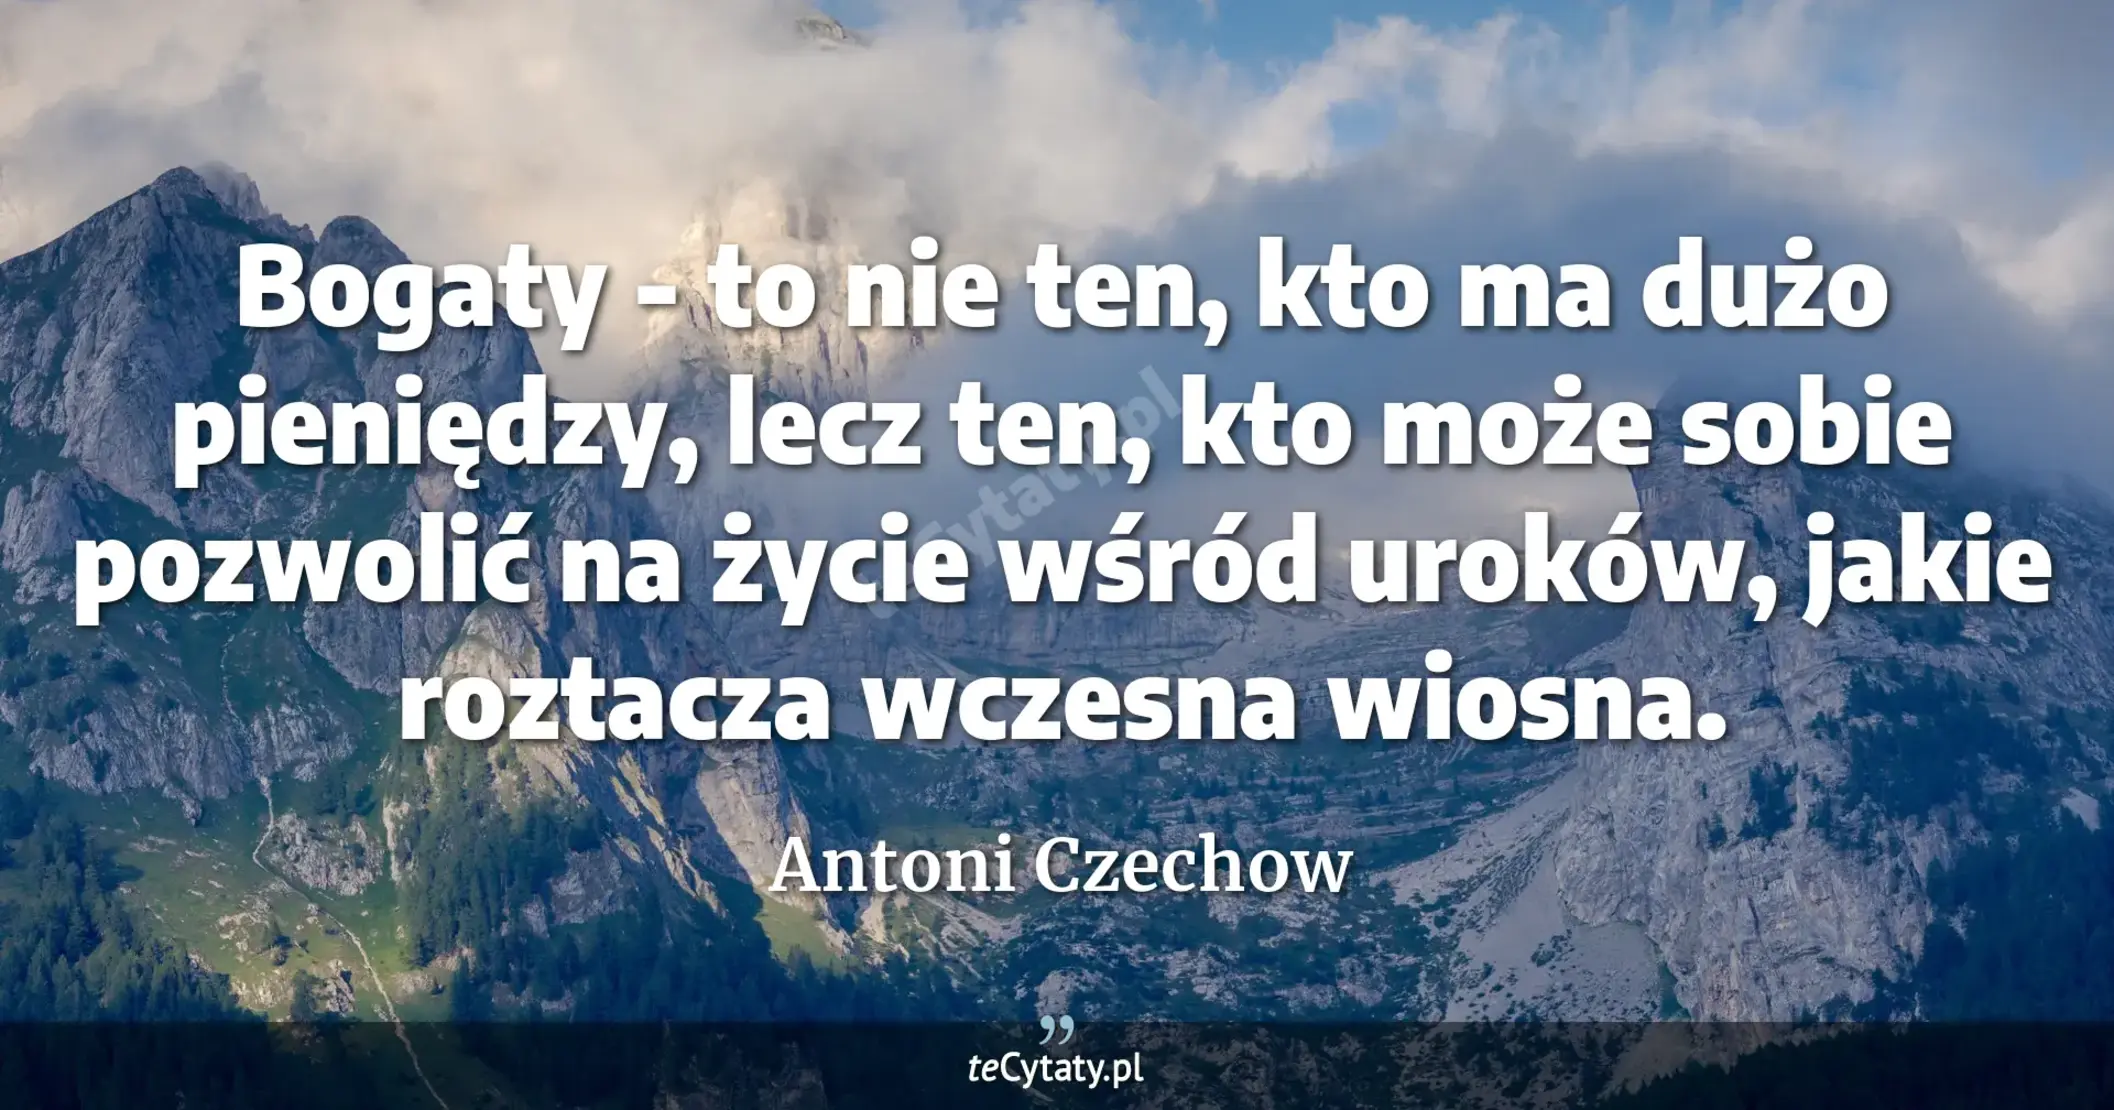 Bogaty - to nie ten, kto ma dużo pieniędzy, lecz ten, kto może sobie pozwolić na życie wśród uroków, jakie roztacza wczesna wiosna. - Antoni Czechow